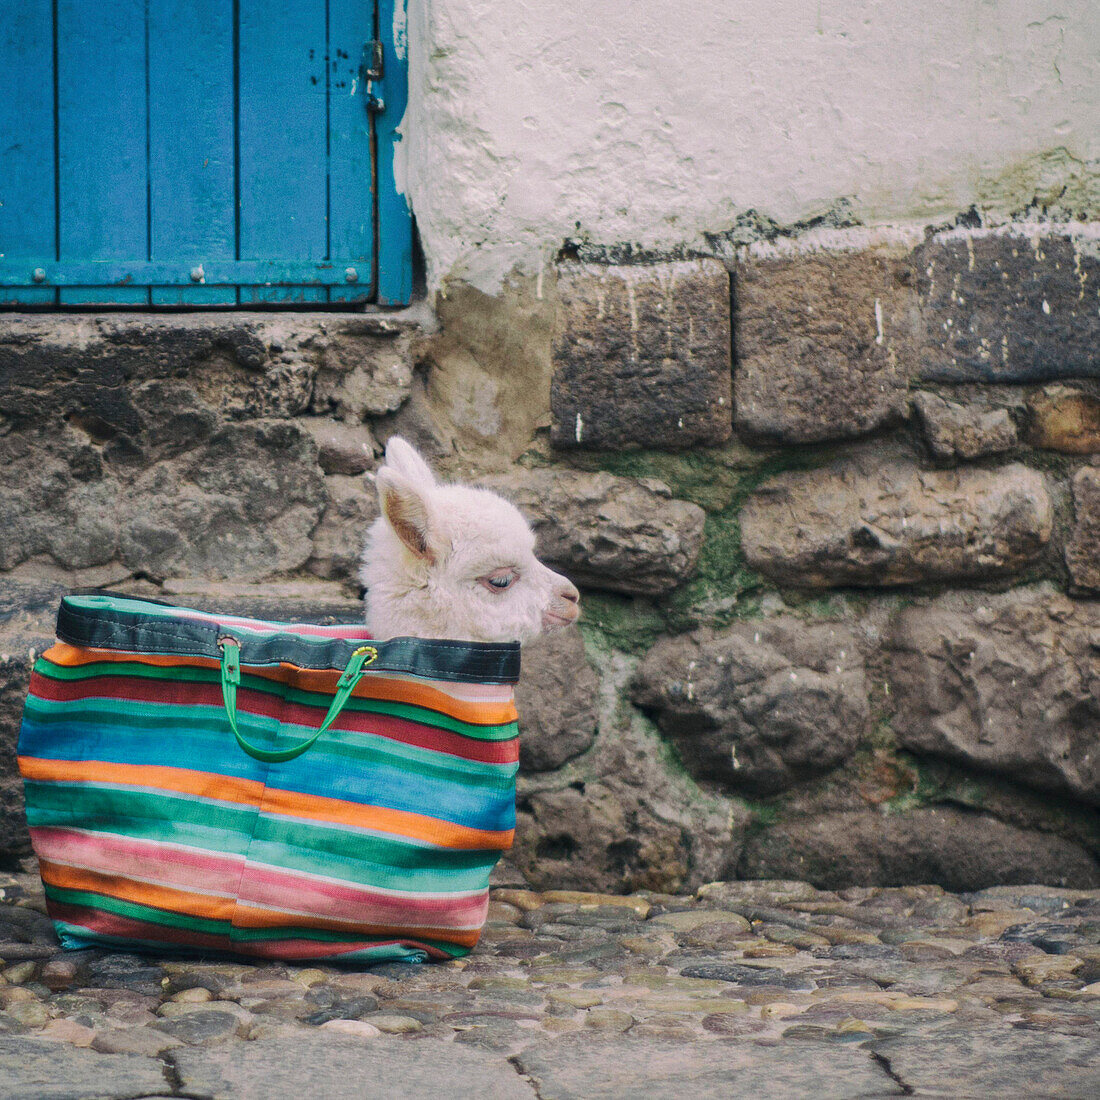 Baby Llama In A Handbag